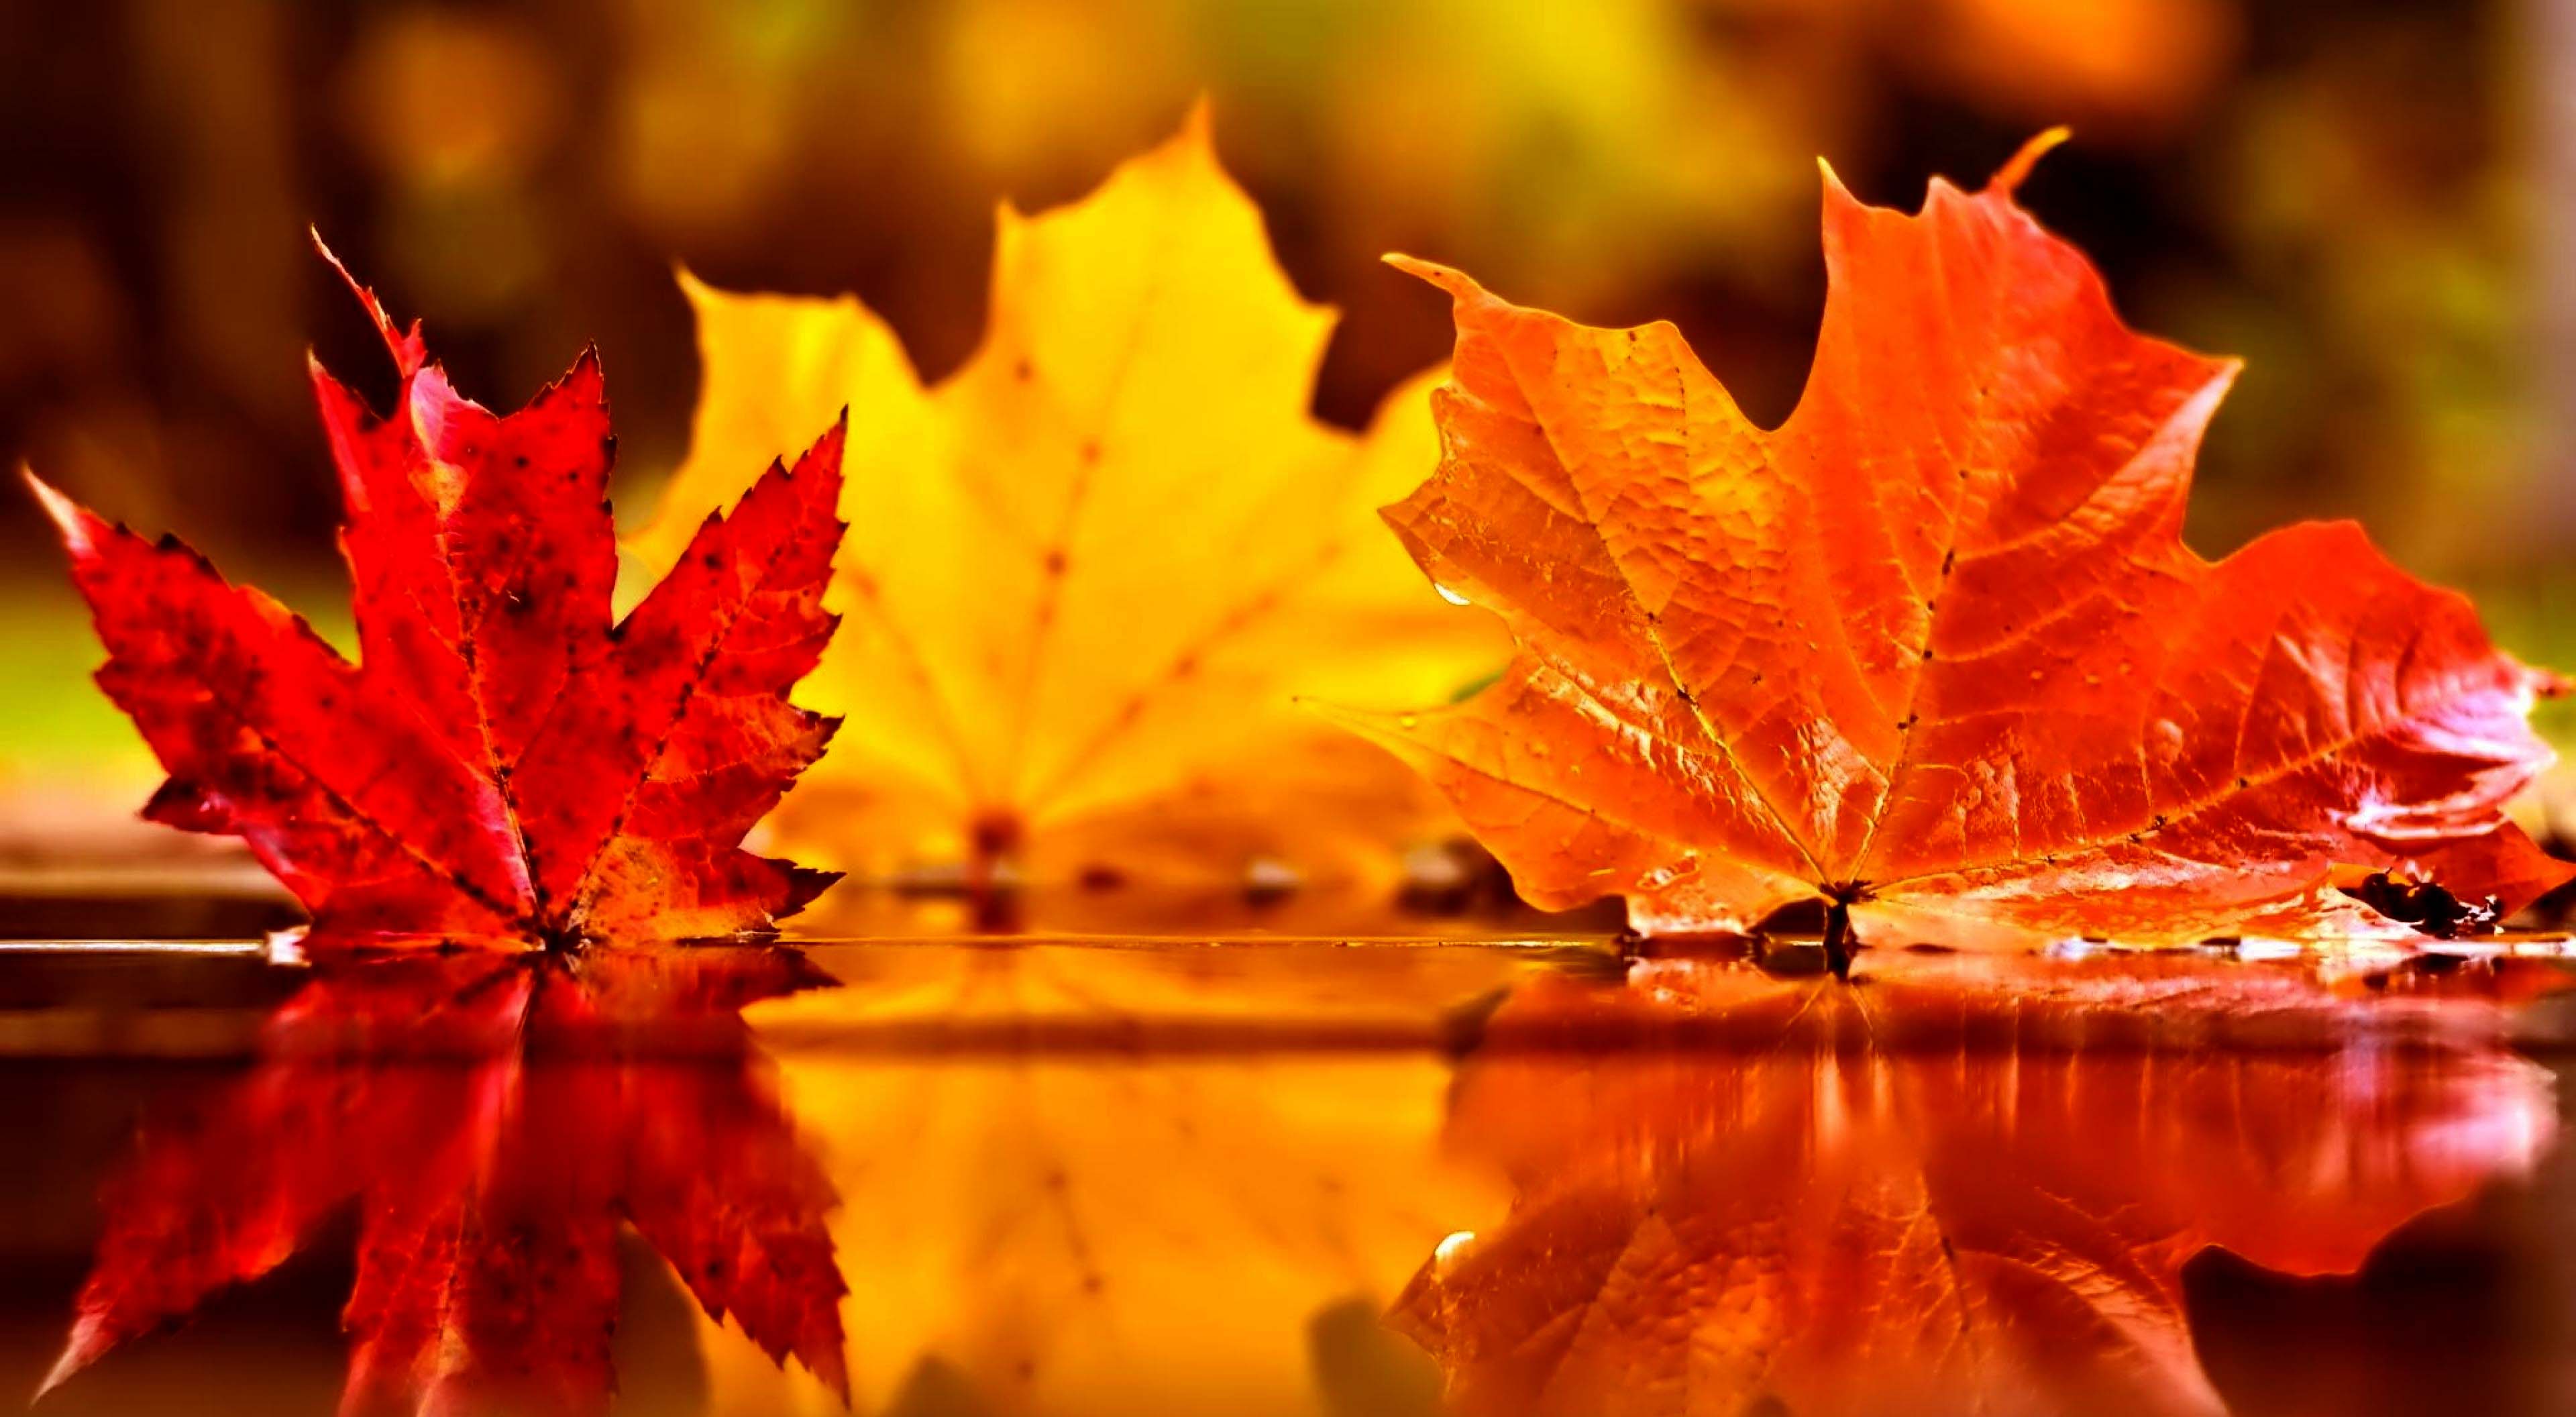 🔥 [62+] Autumn Leaves Wallpapers | WallpaperSafari